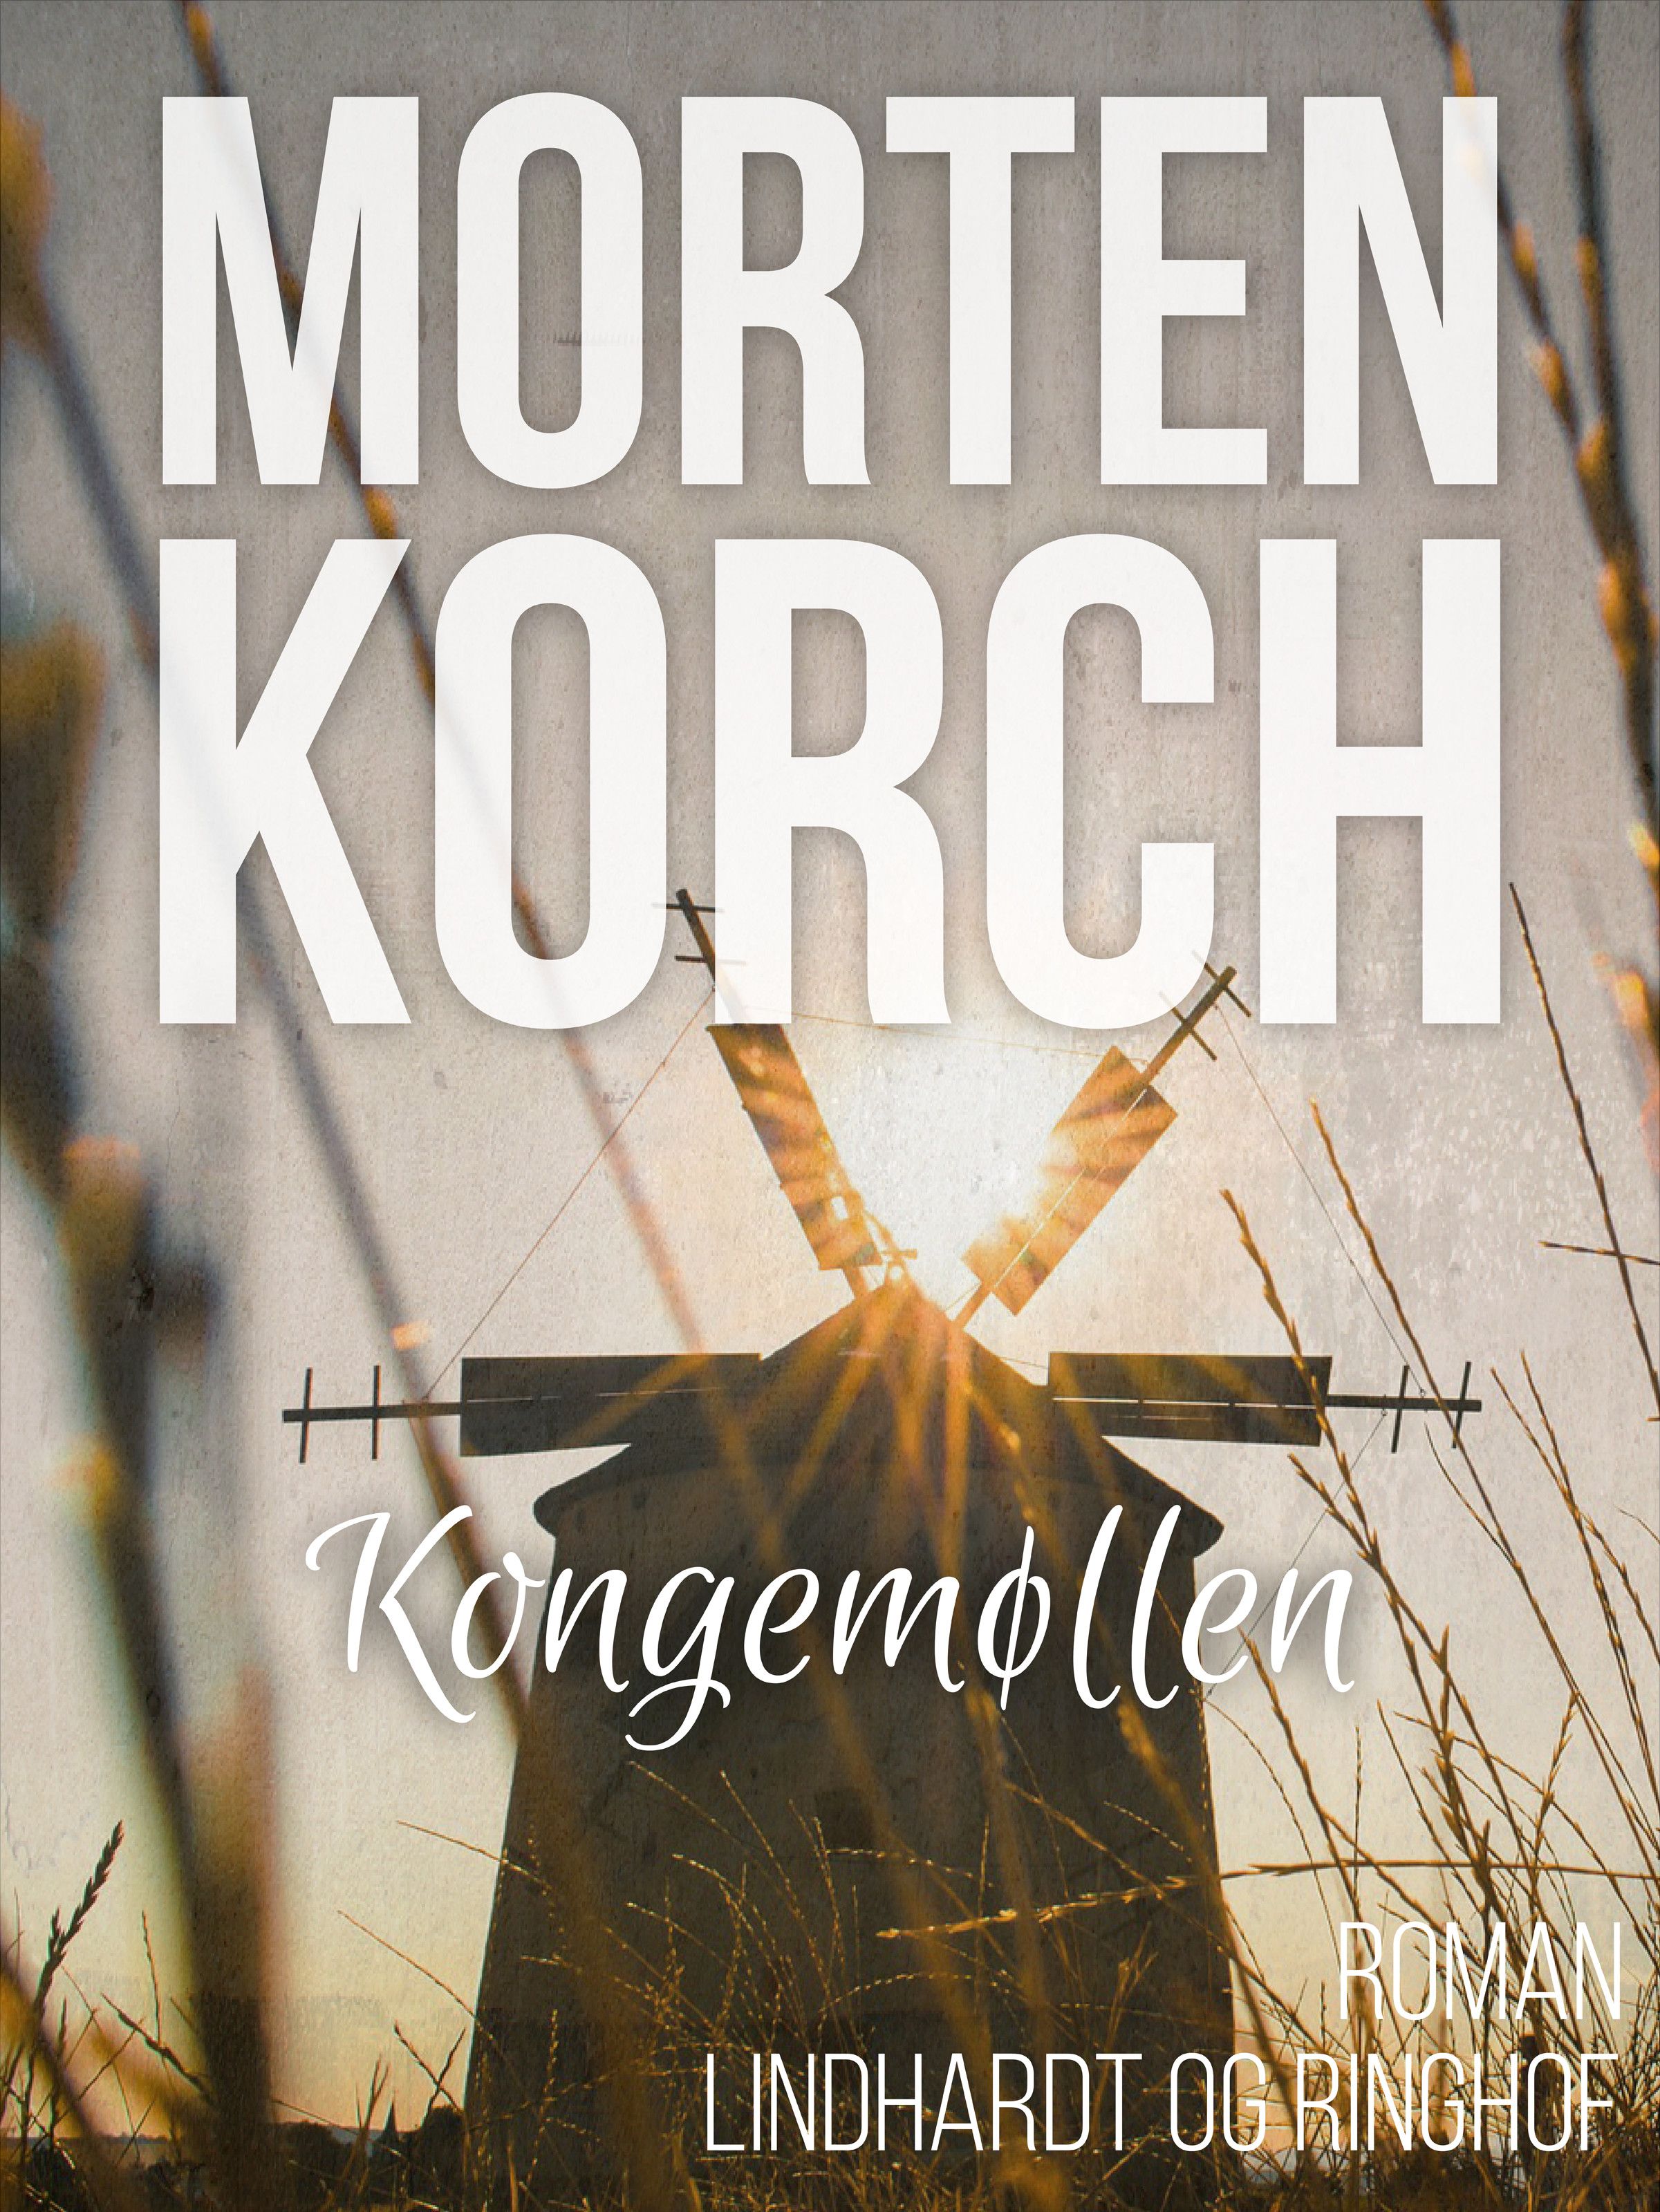 Kongemøllen, ljudbok av Morten Korch